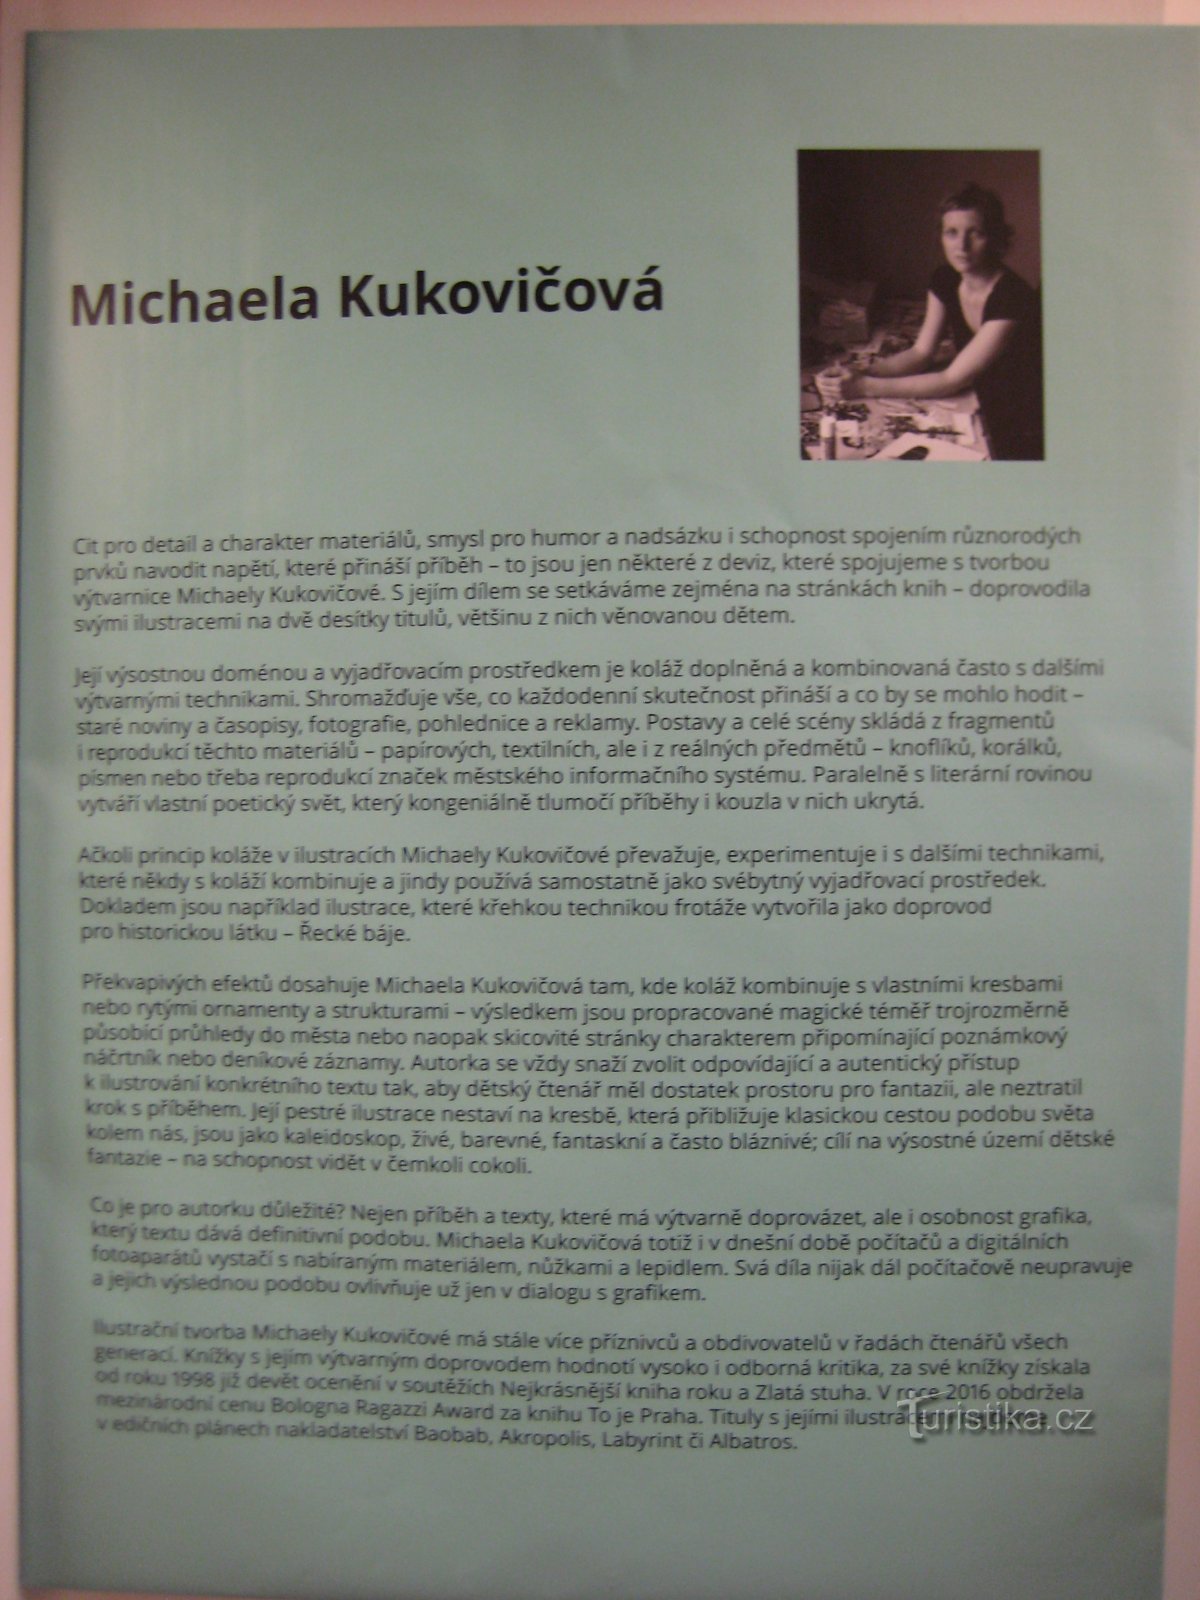 Выставка Микаэлы Куковичовой - Бублух, Духноус и другие - Локоть